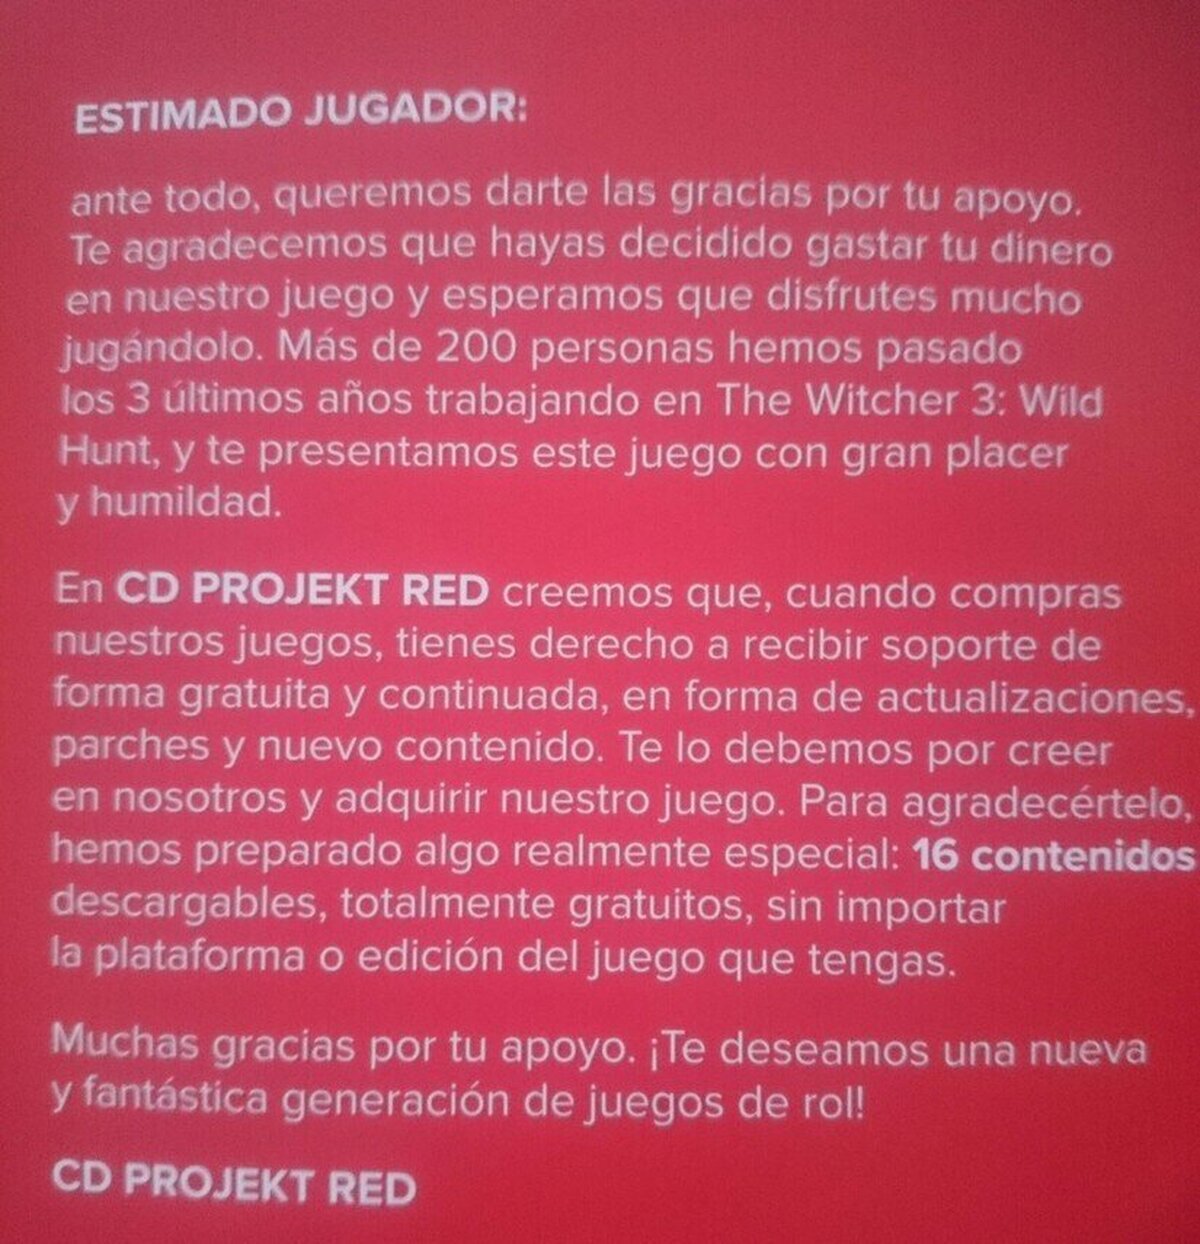 CD PROJEKT RED, una compañía como las que no quedan